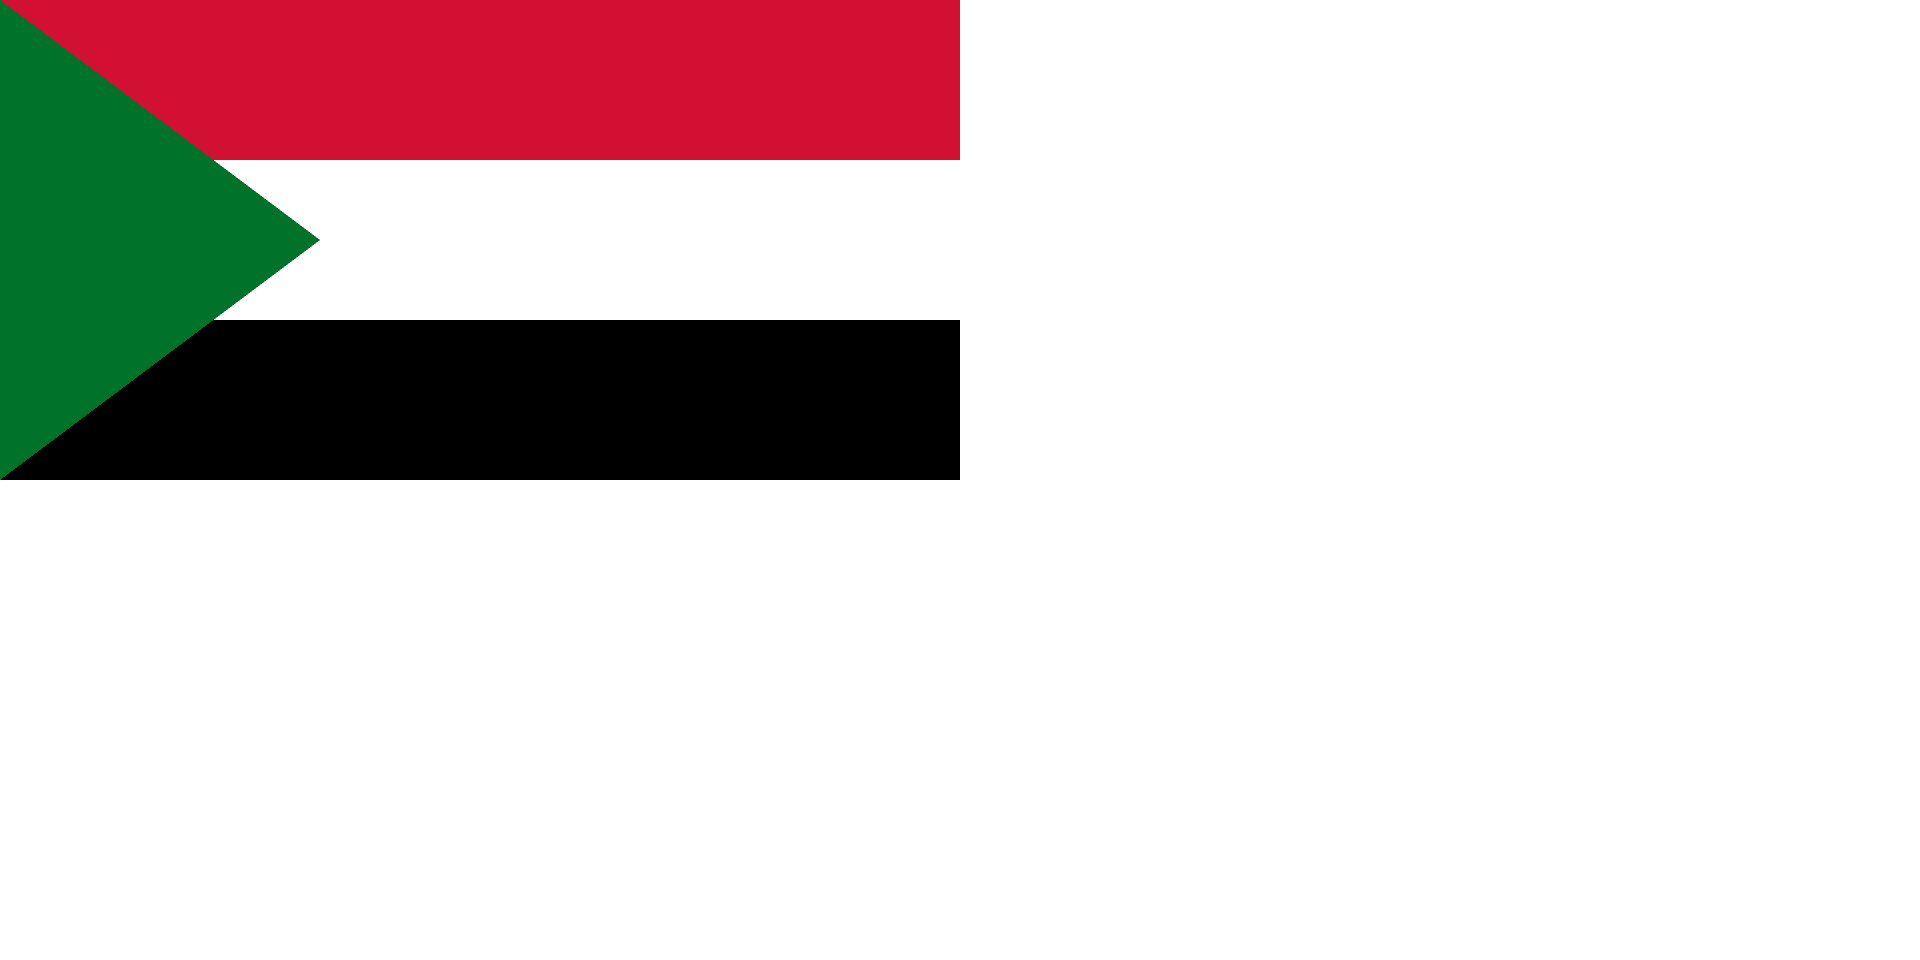 Navy of Sudan